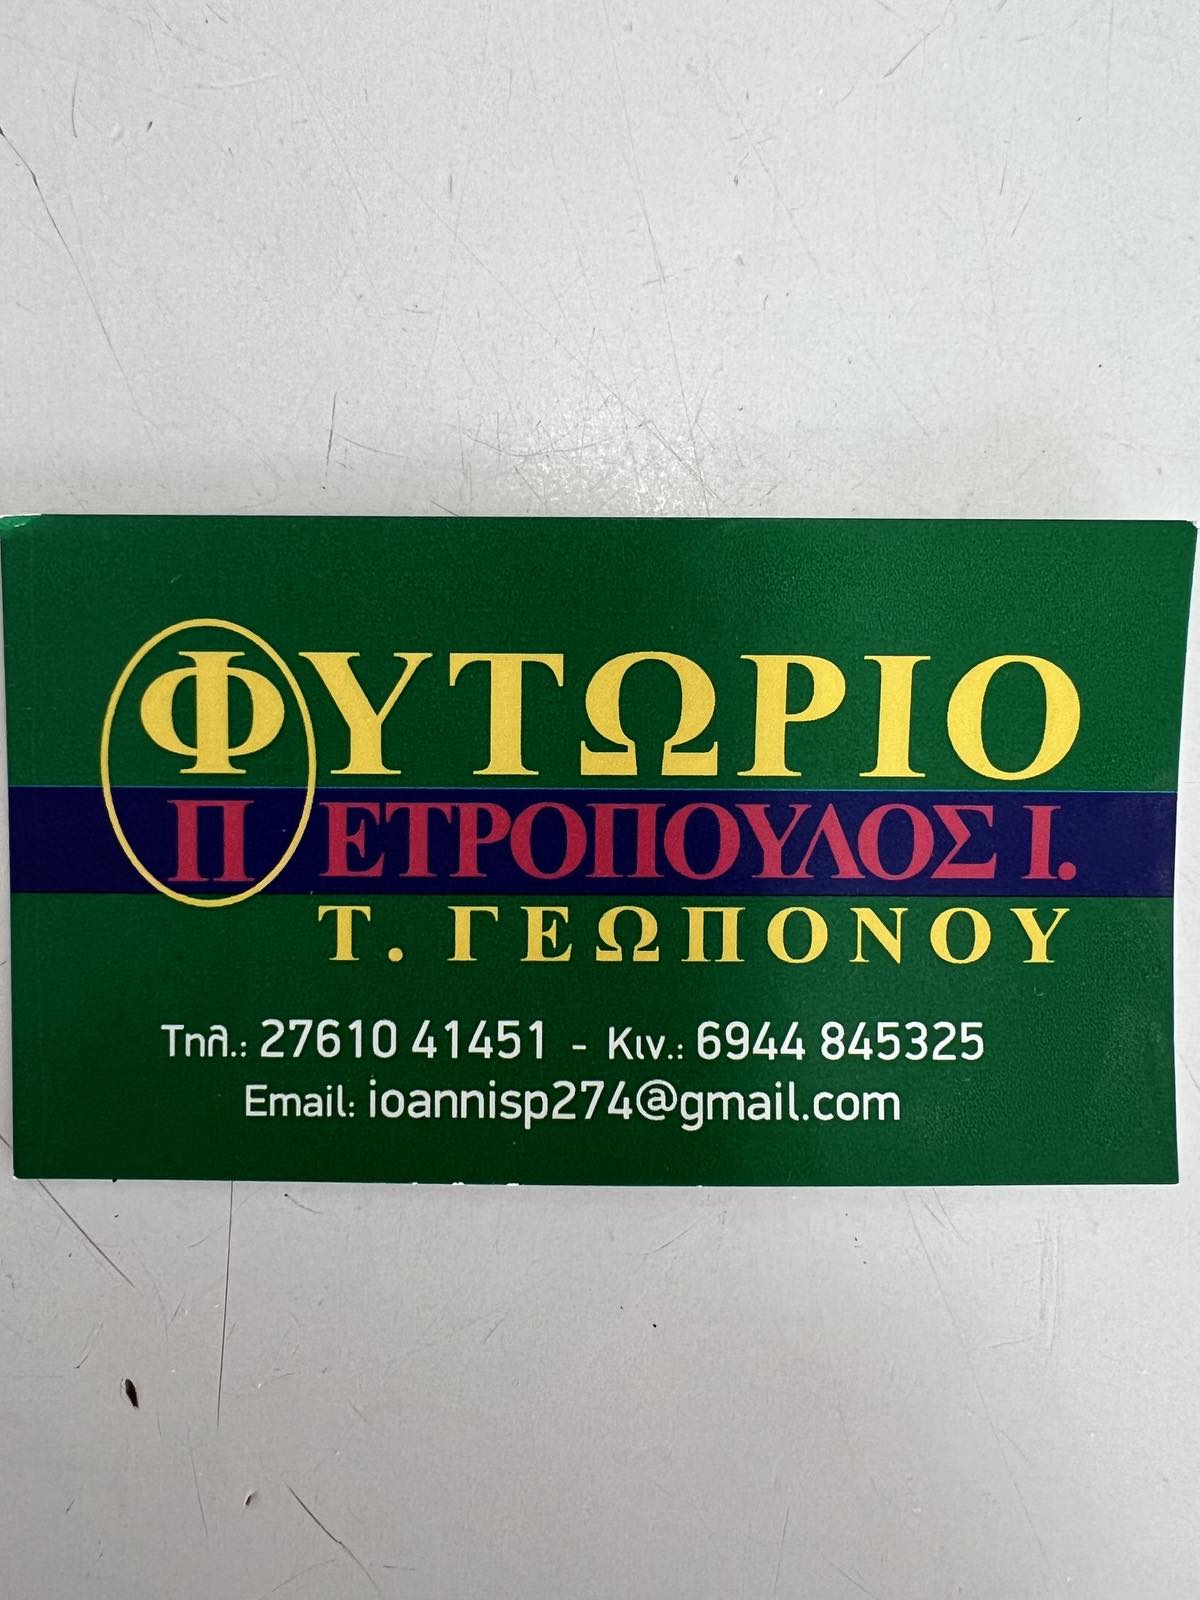 ΦΥΤΩΡΙΟ ΠΕΤΡΟΠΟΥΛΟΣ Ι. Τ. ΓΕΩΠΟΝΟΥ logo